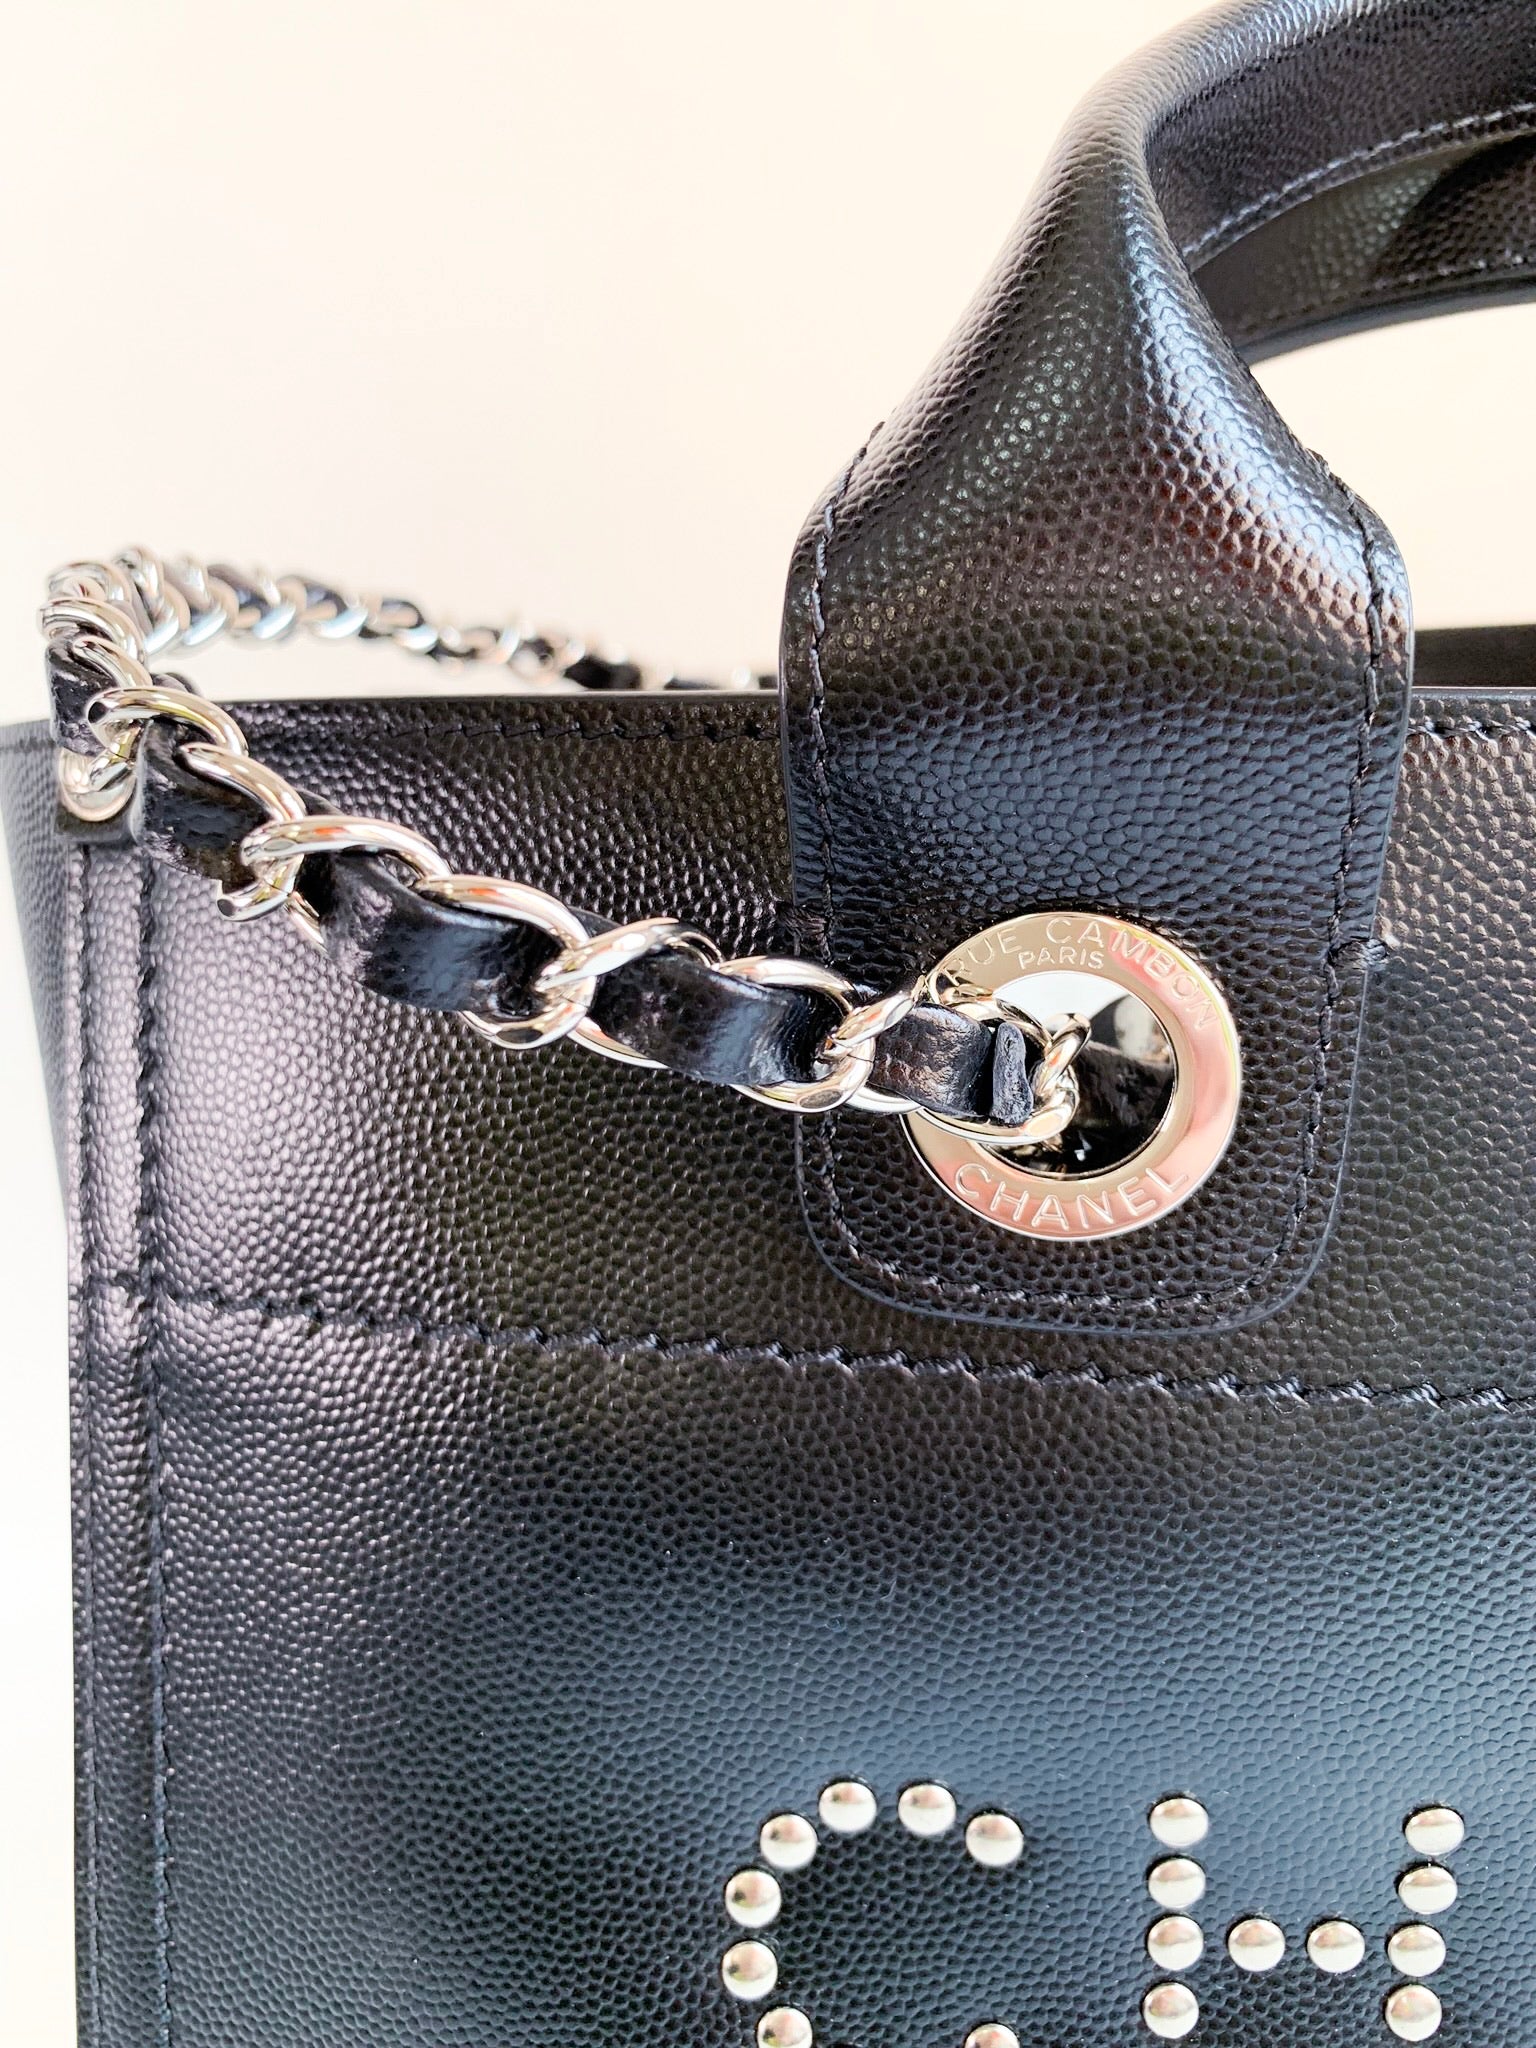 Chanel 2021 Small Deauville Tote - Black Totes, Handbags - CHA887892